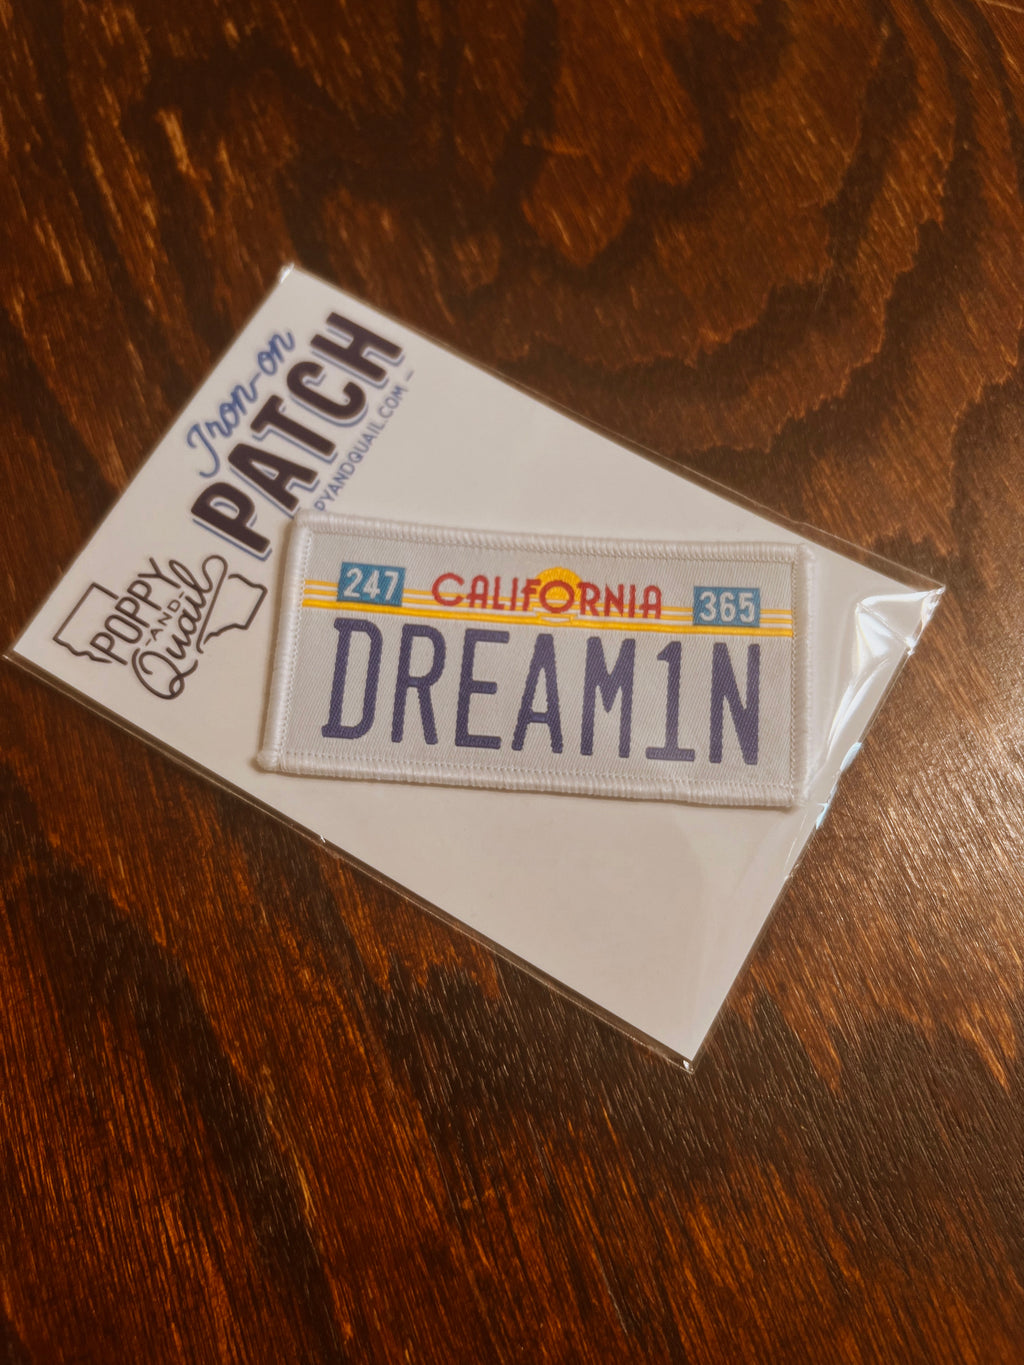 California Dream1n Patch